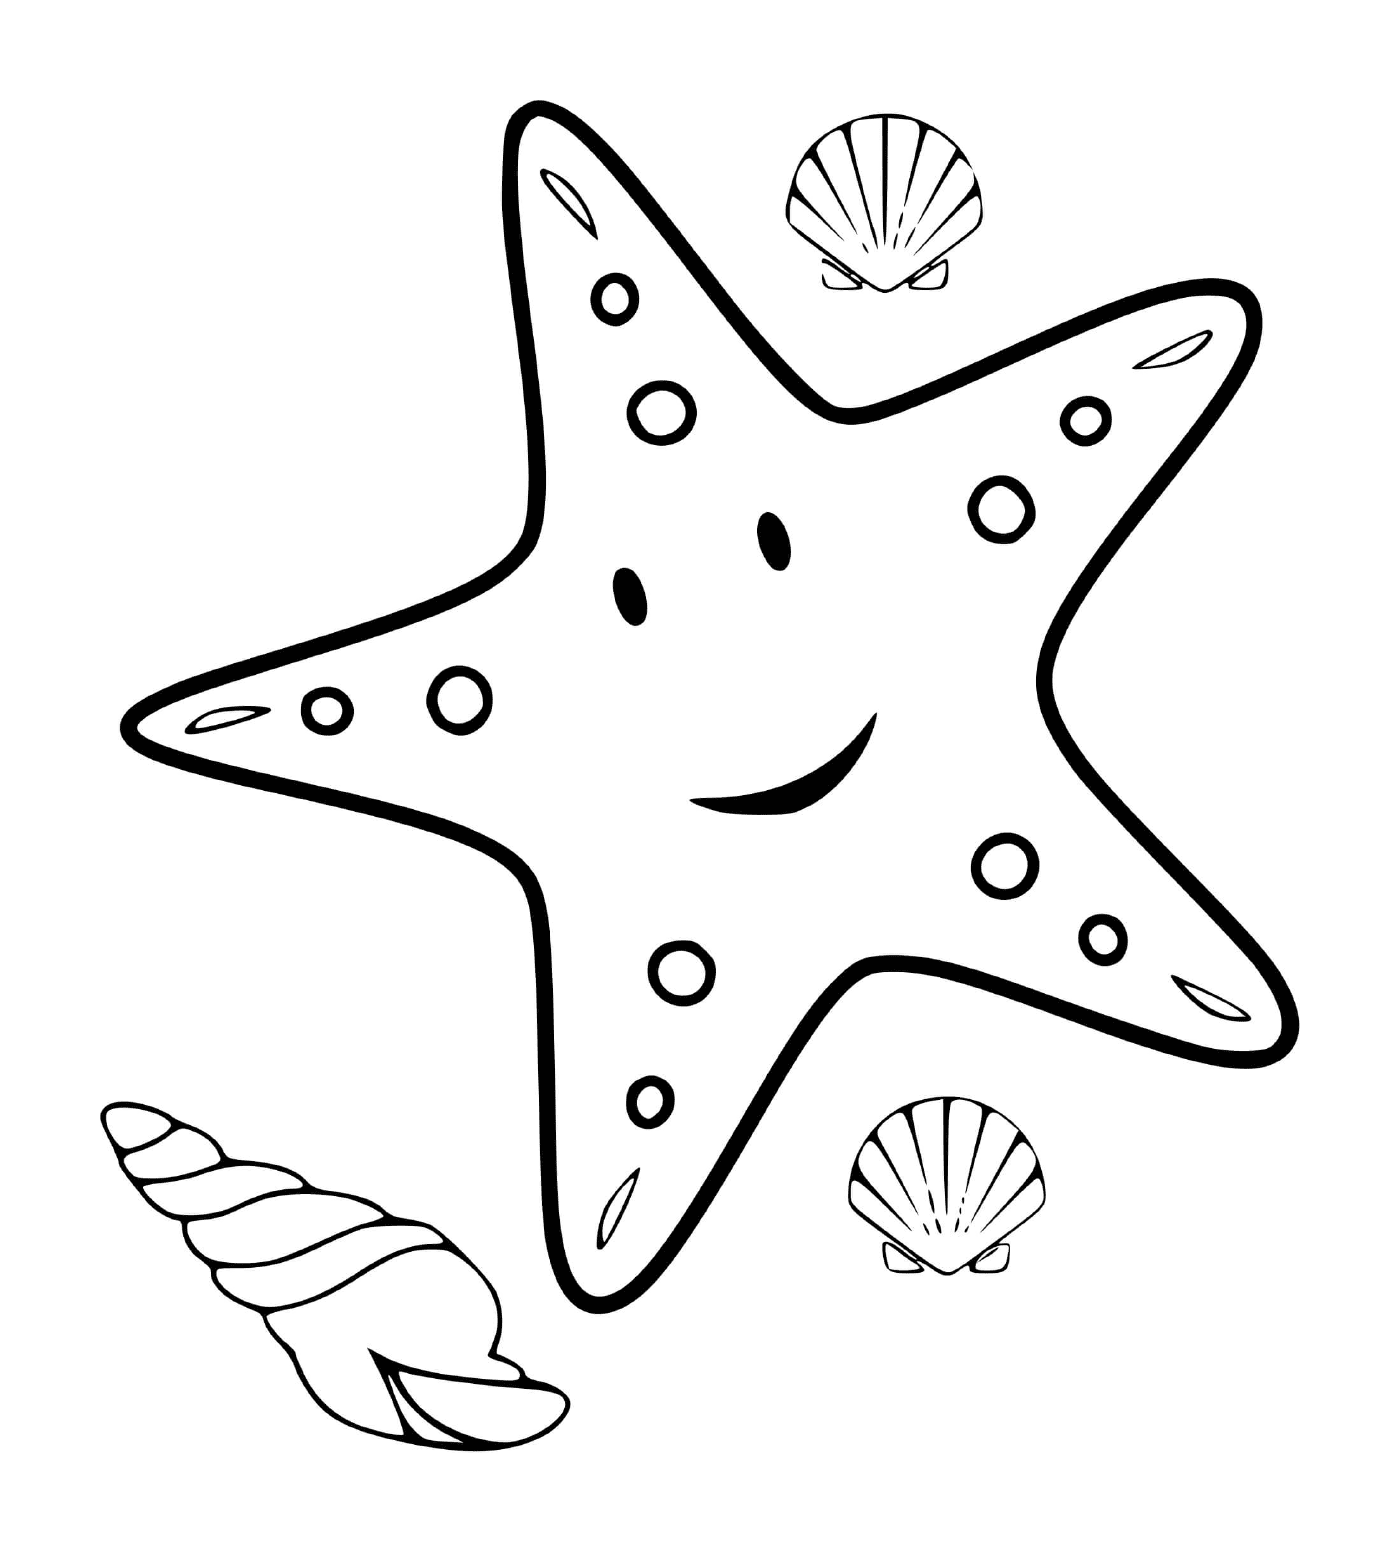   Une étoile de mer accompagnée de coquillages marins 